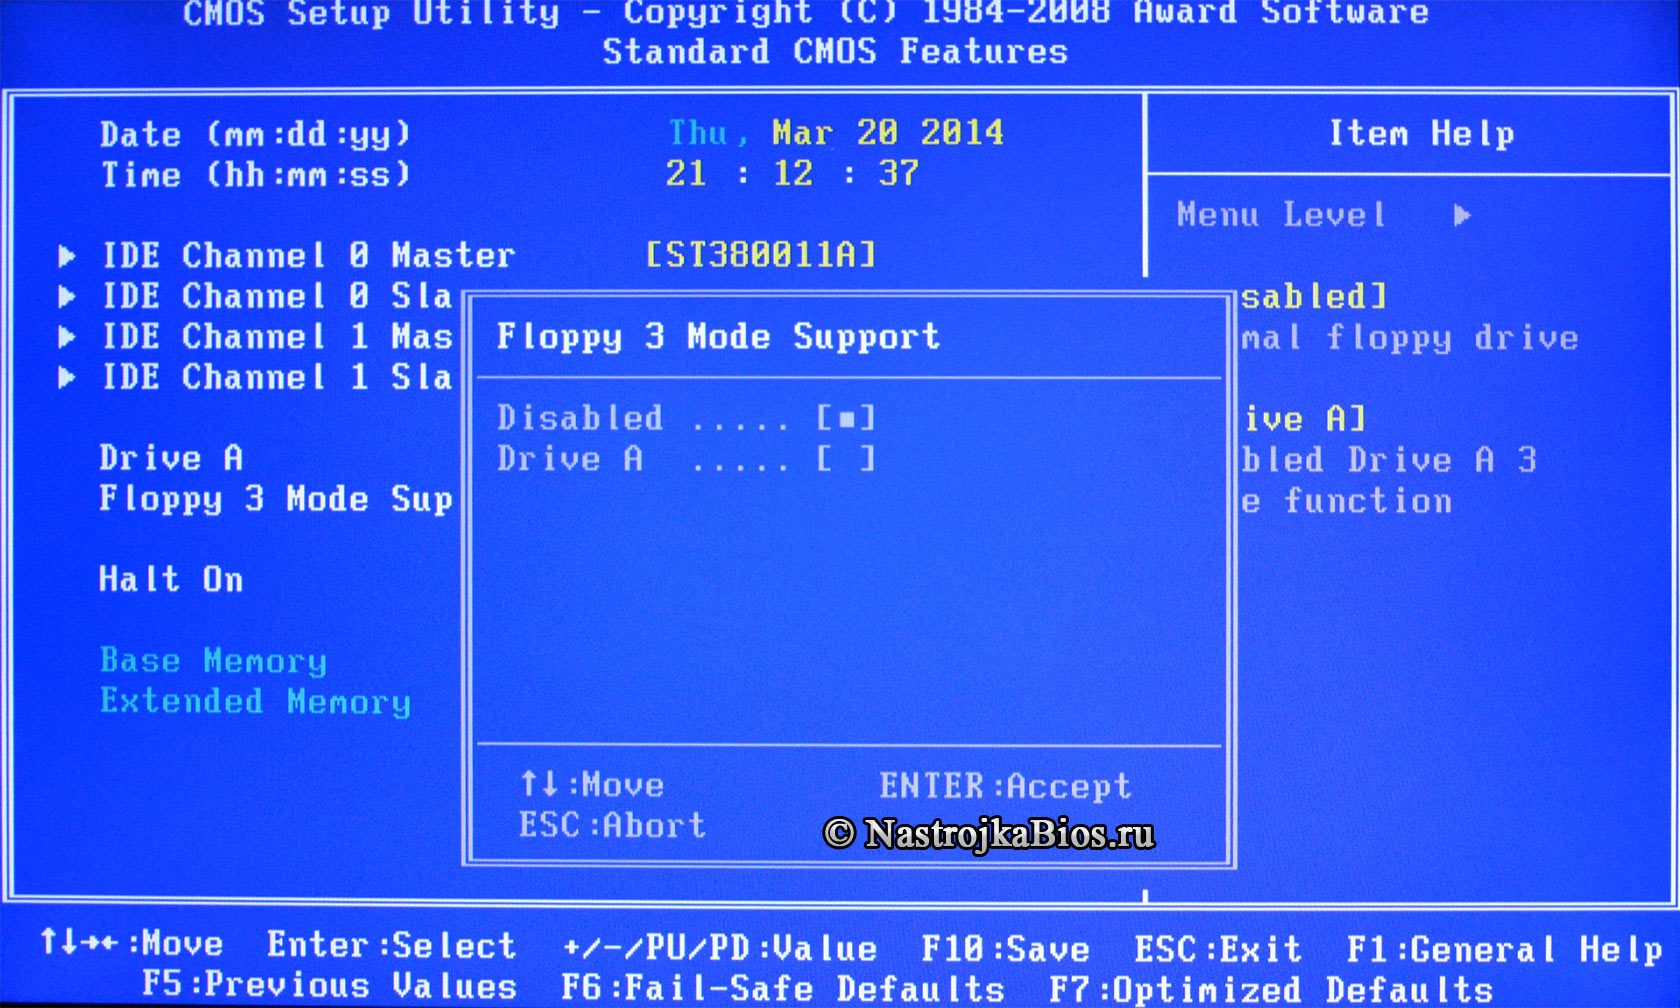 Floppy 3 Mode Support - отключает поддержку японских флоппи (с фото)